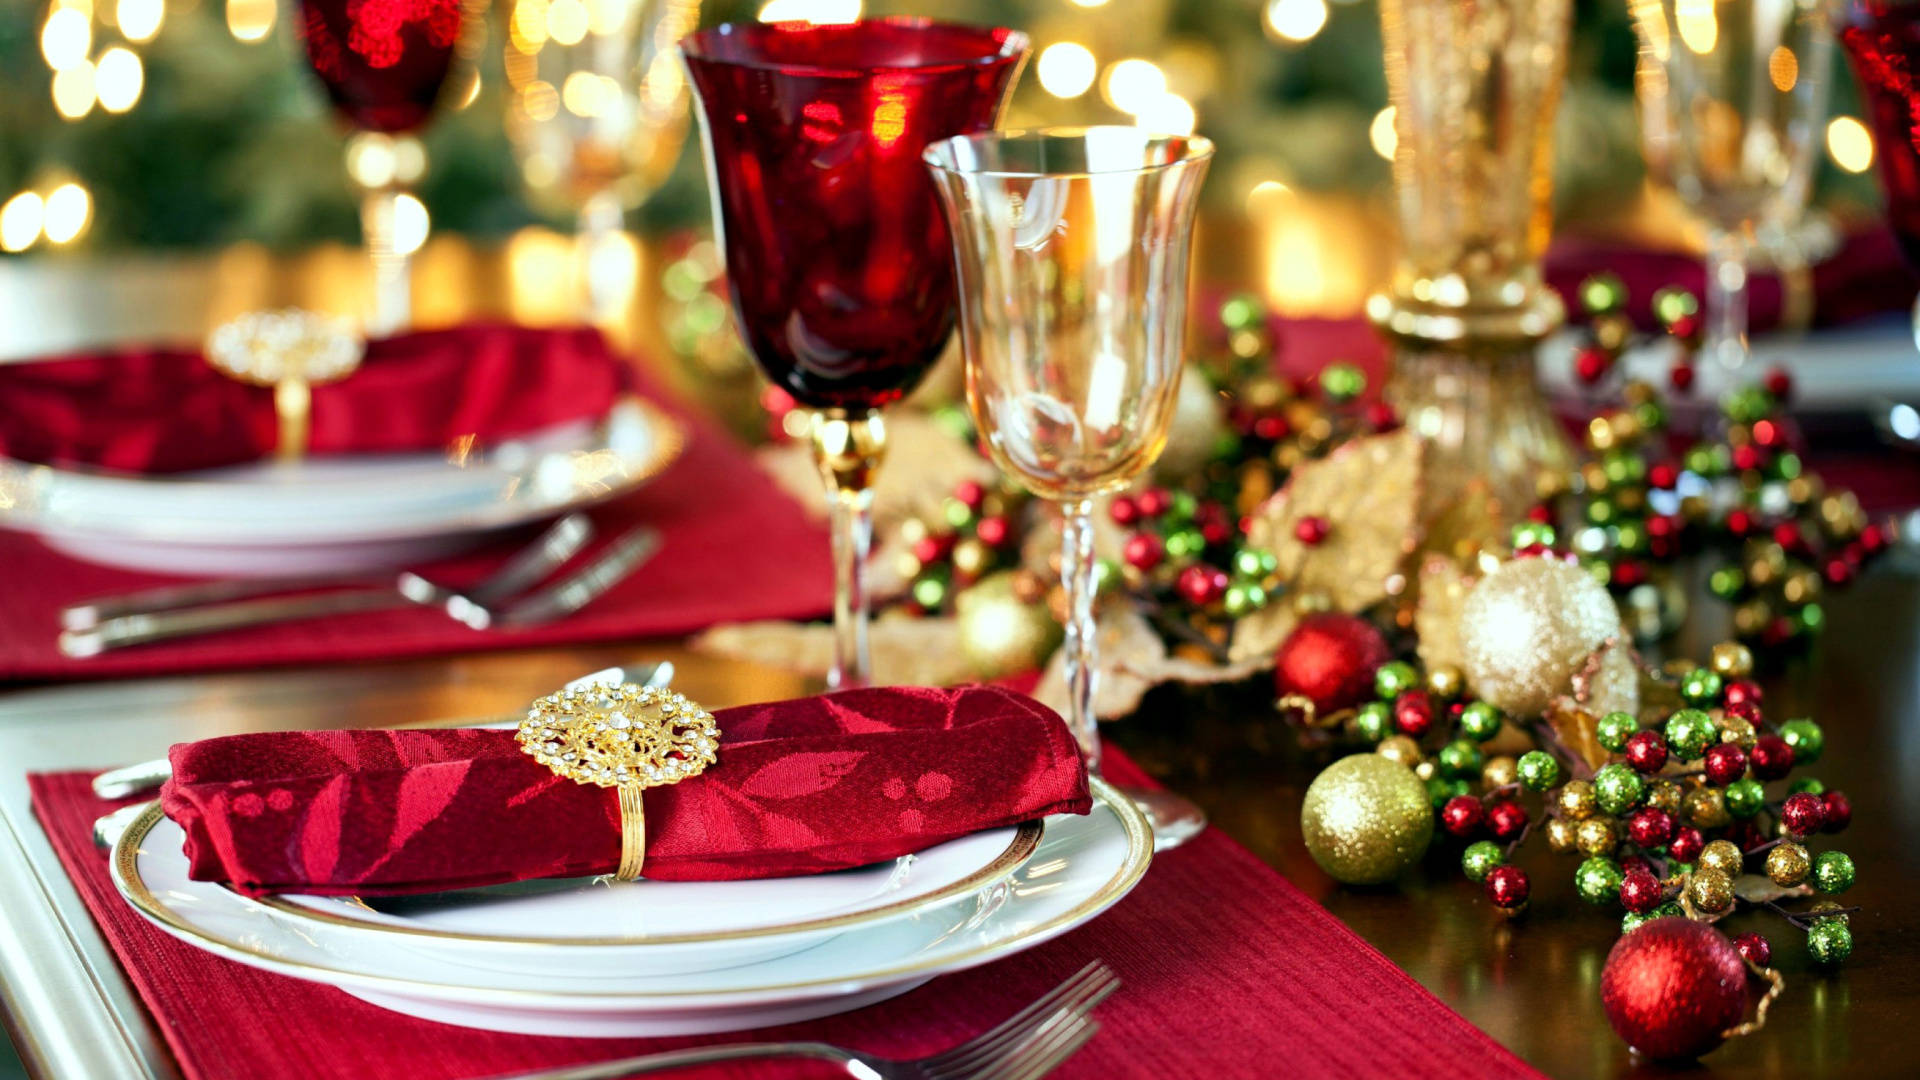 Red-Themed Christmas Dinner Wallpaper